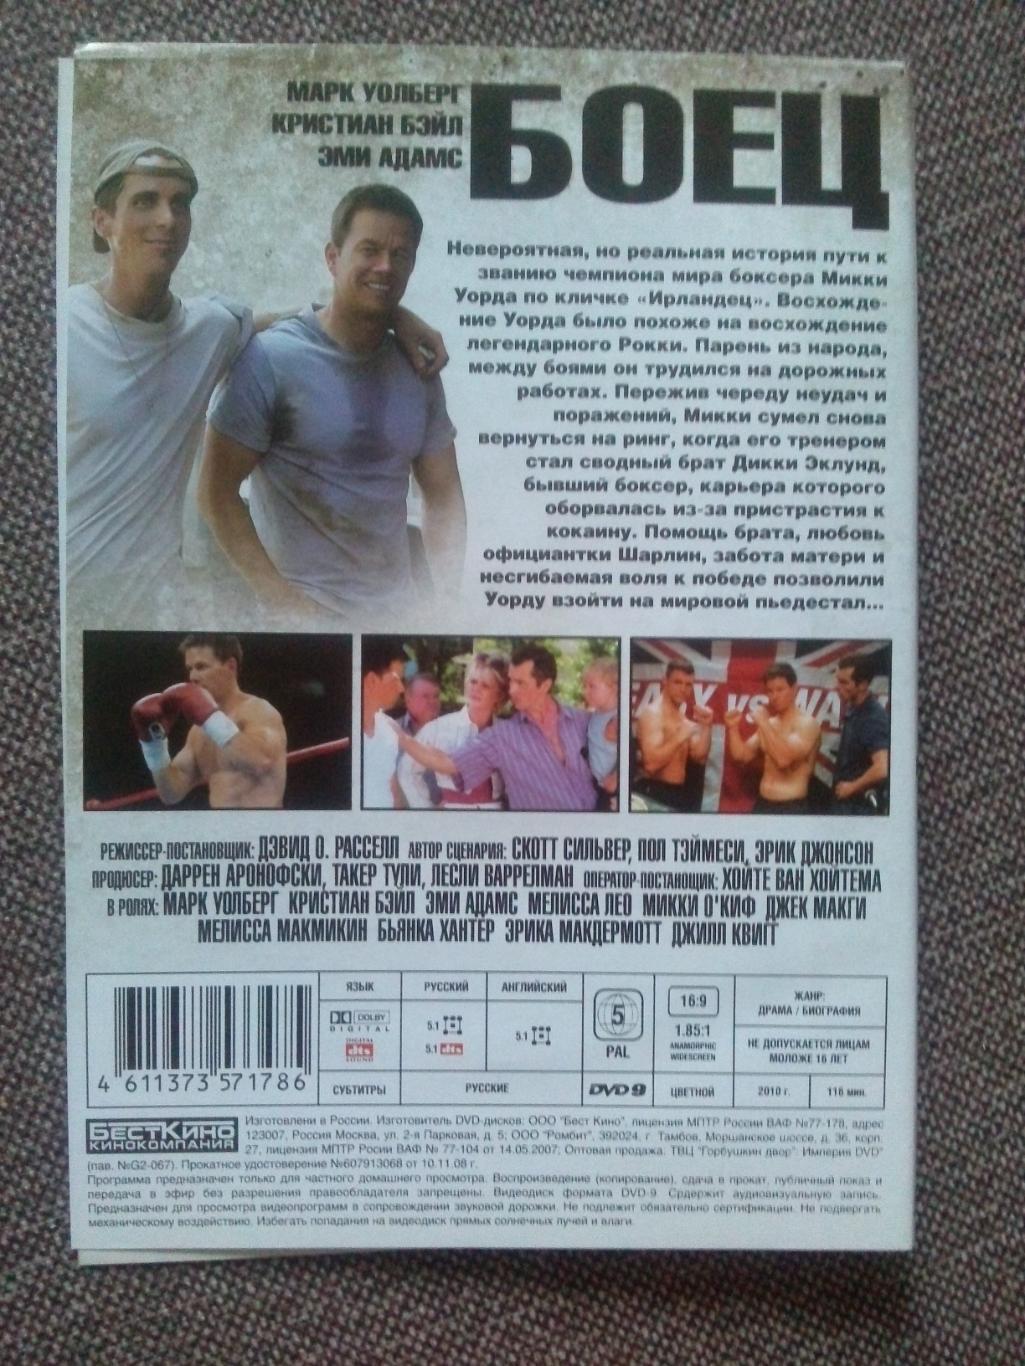 DVD диск : фильм Боец 2010 г. (Спортивный фильм о боксе с элементами боевика) 1